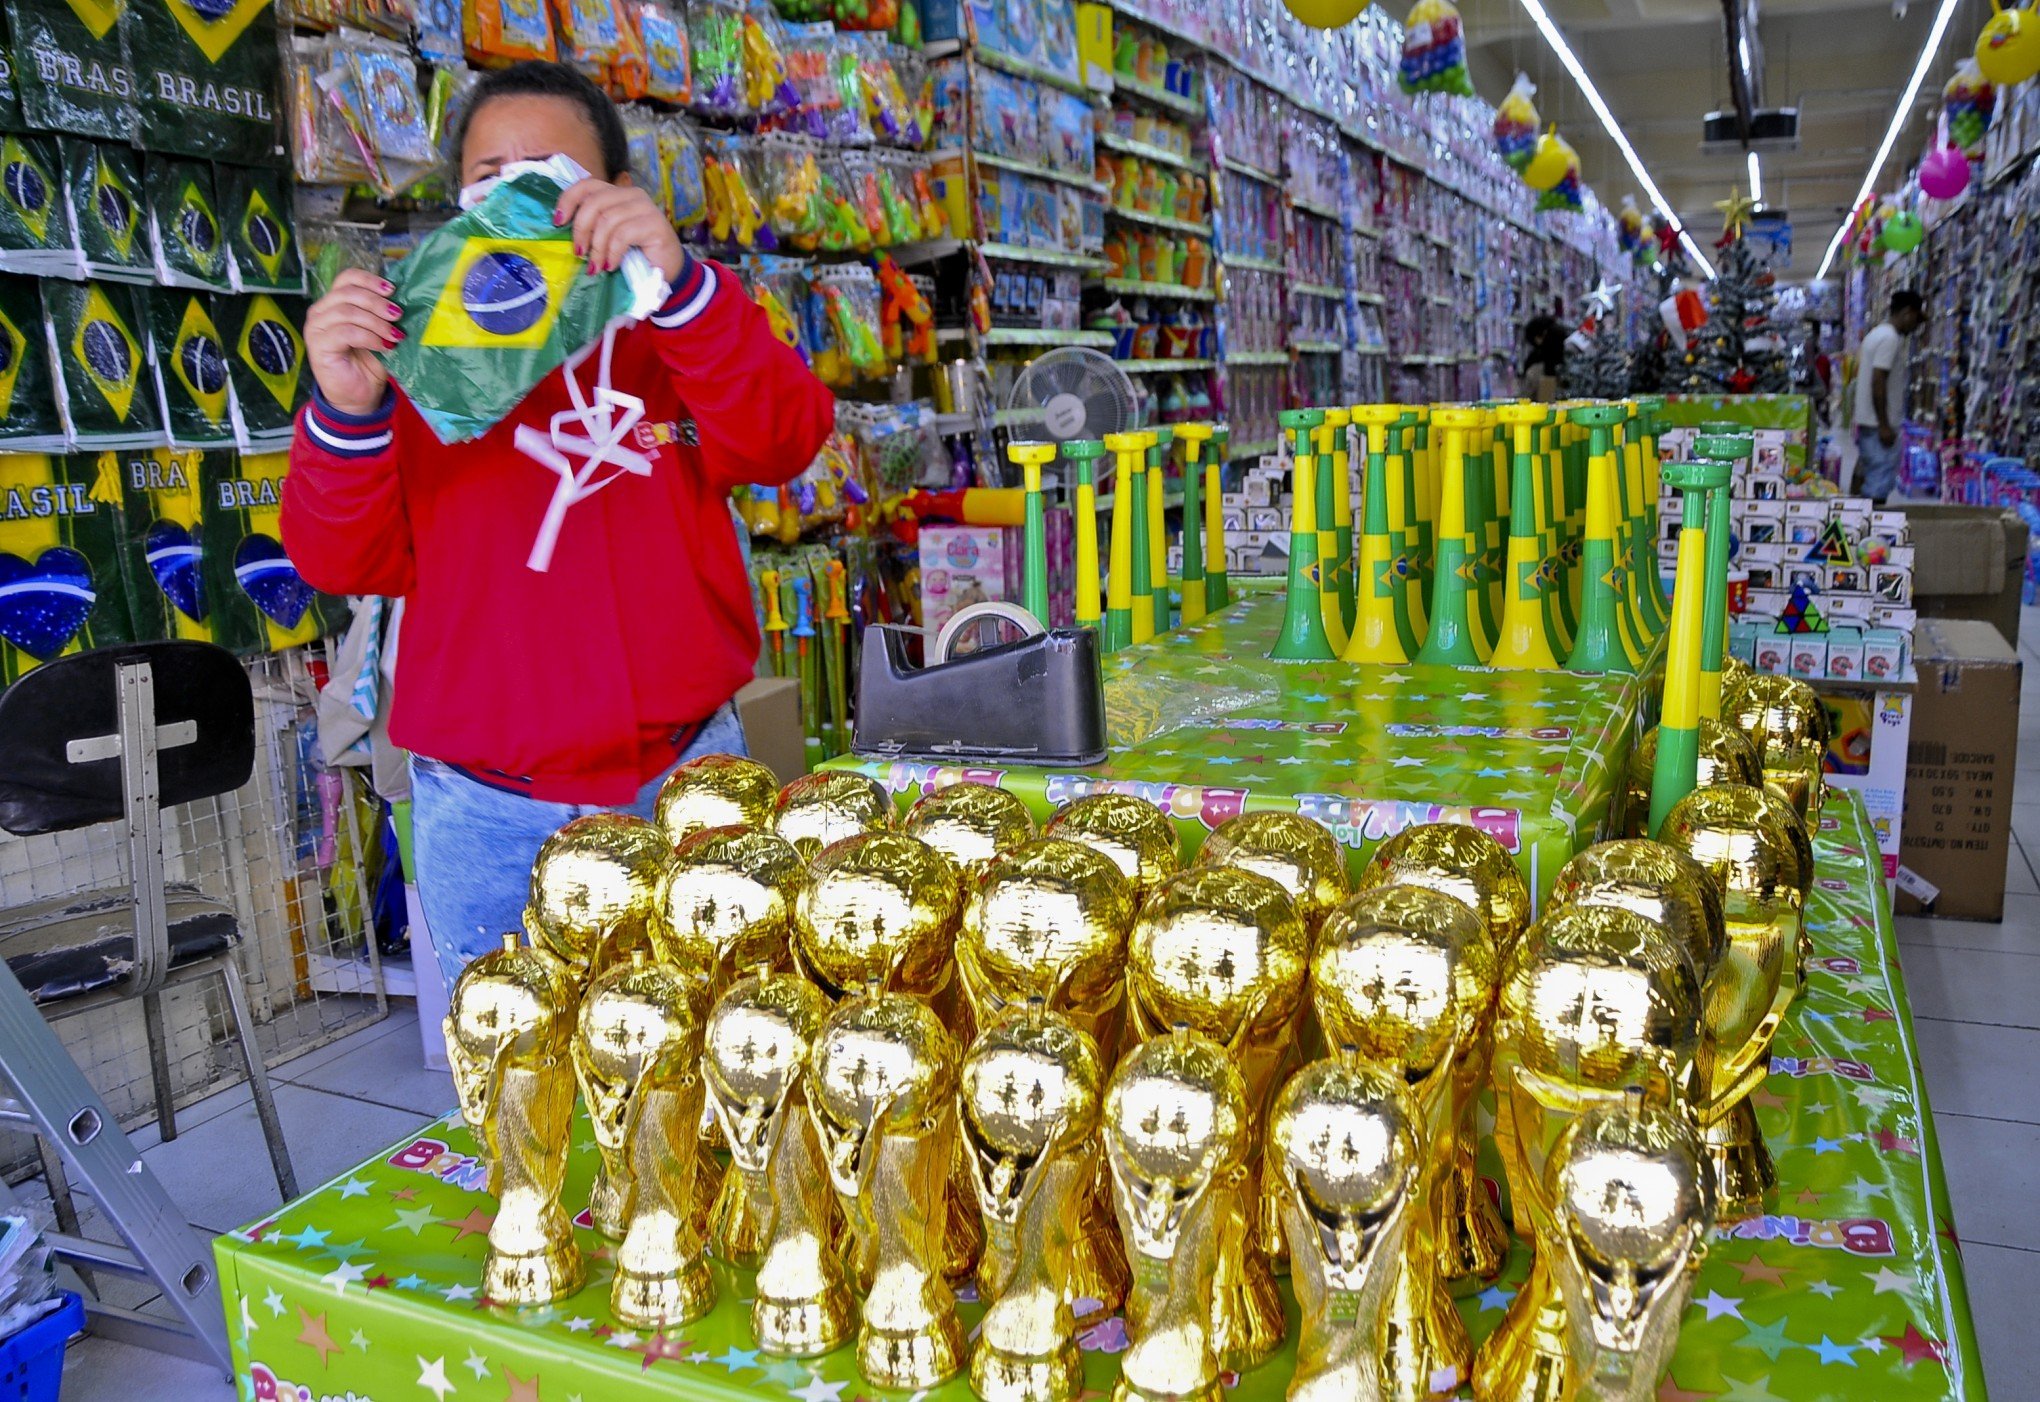 Confira as mudanças nos serviços da Prefeitura nos jogos do Brasil na Copa